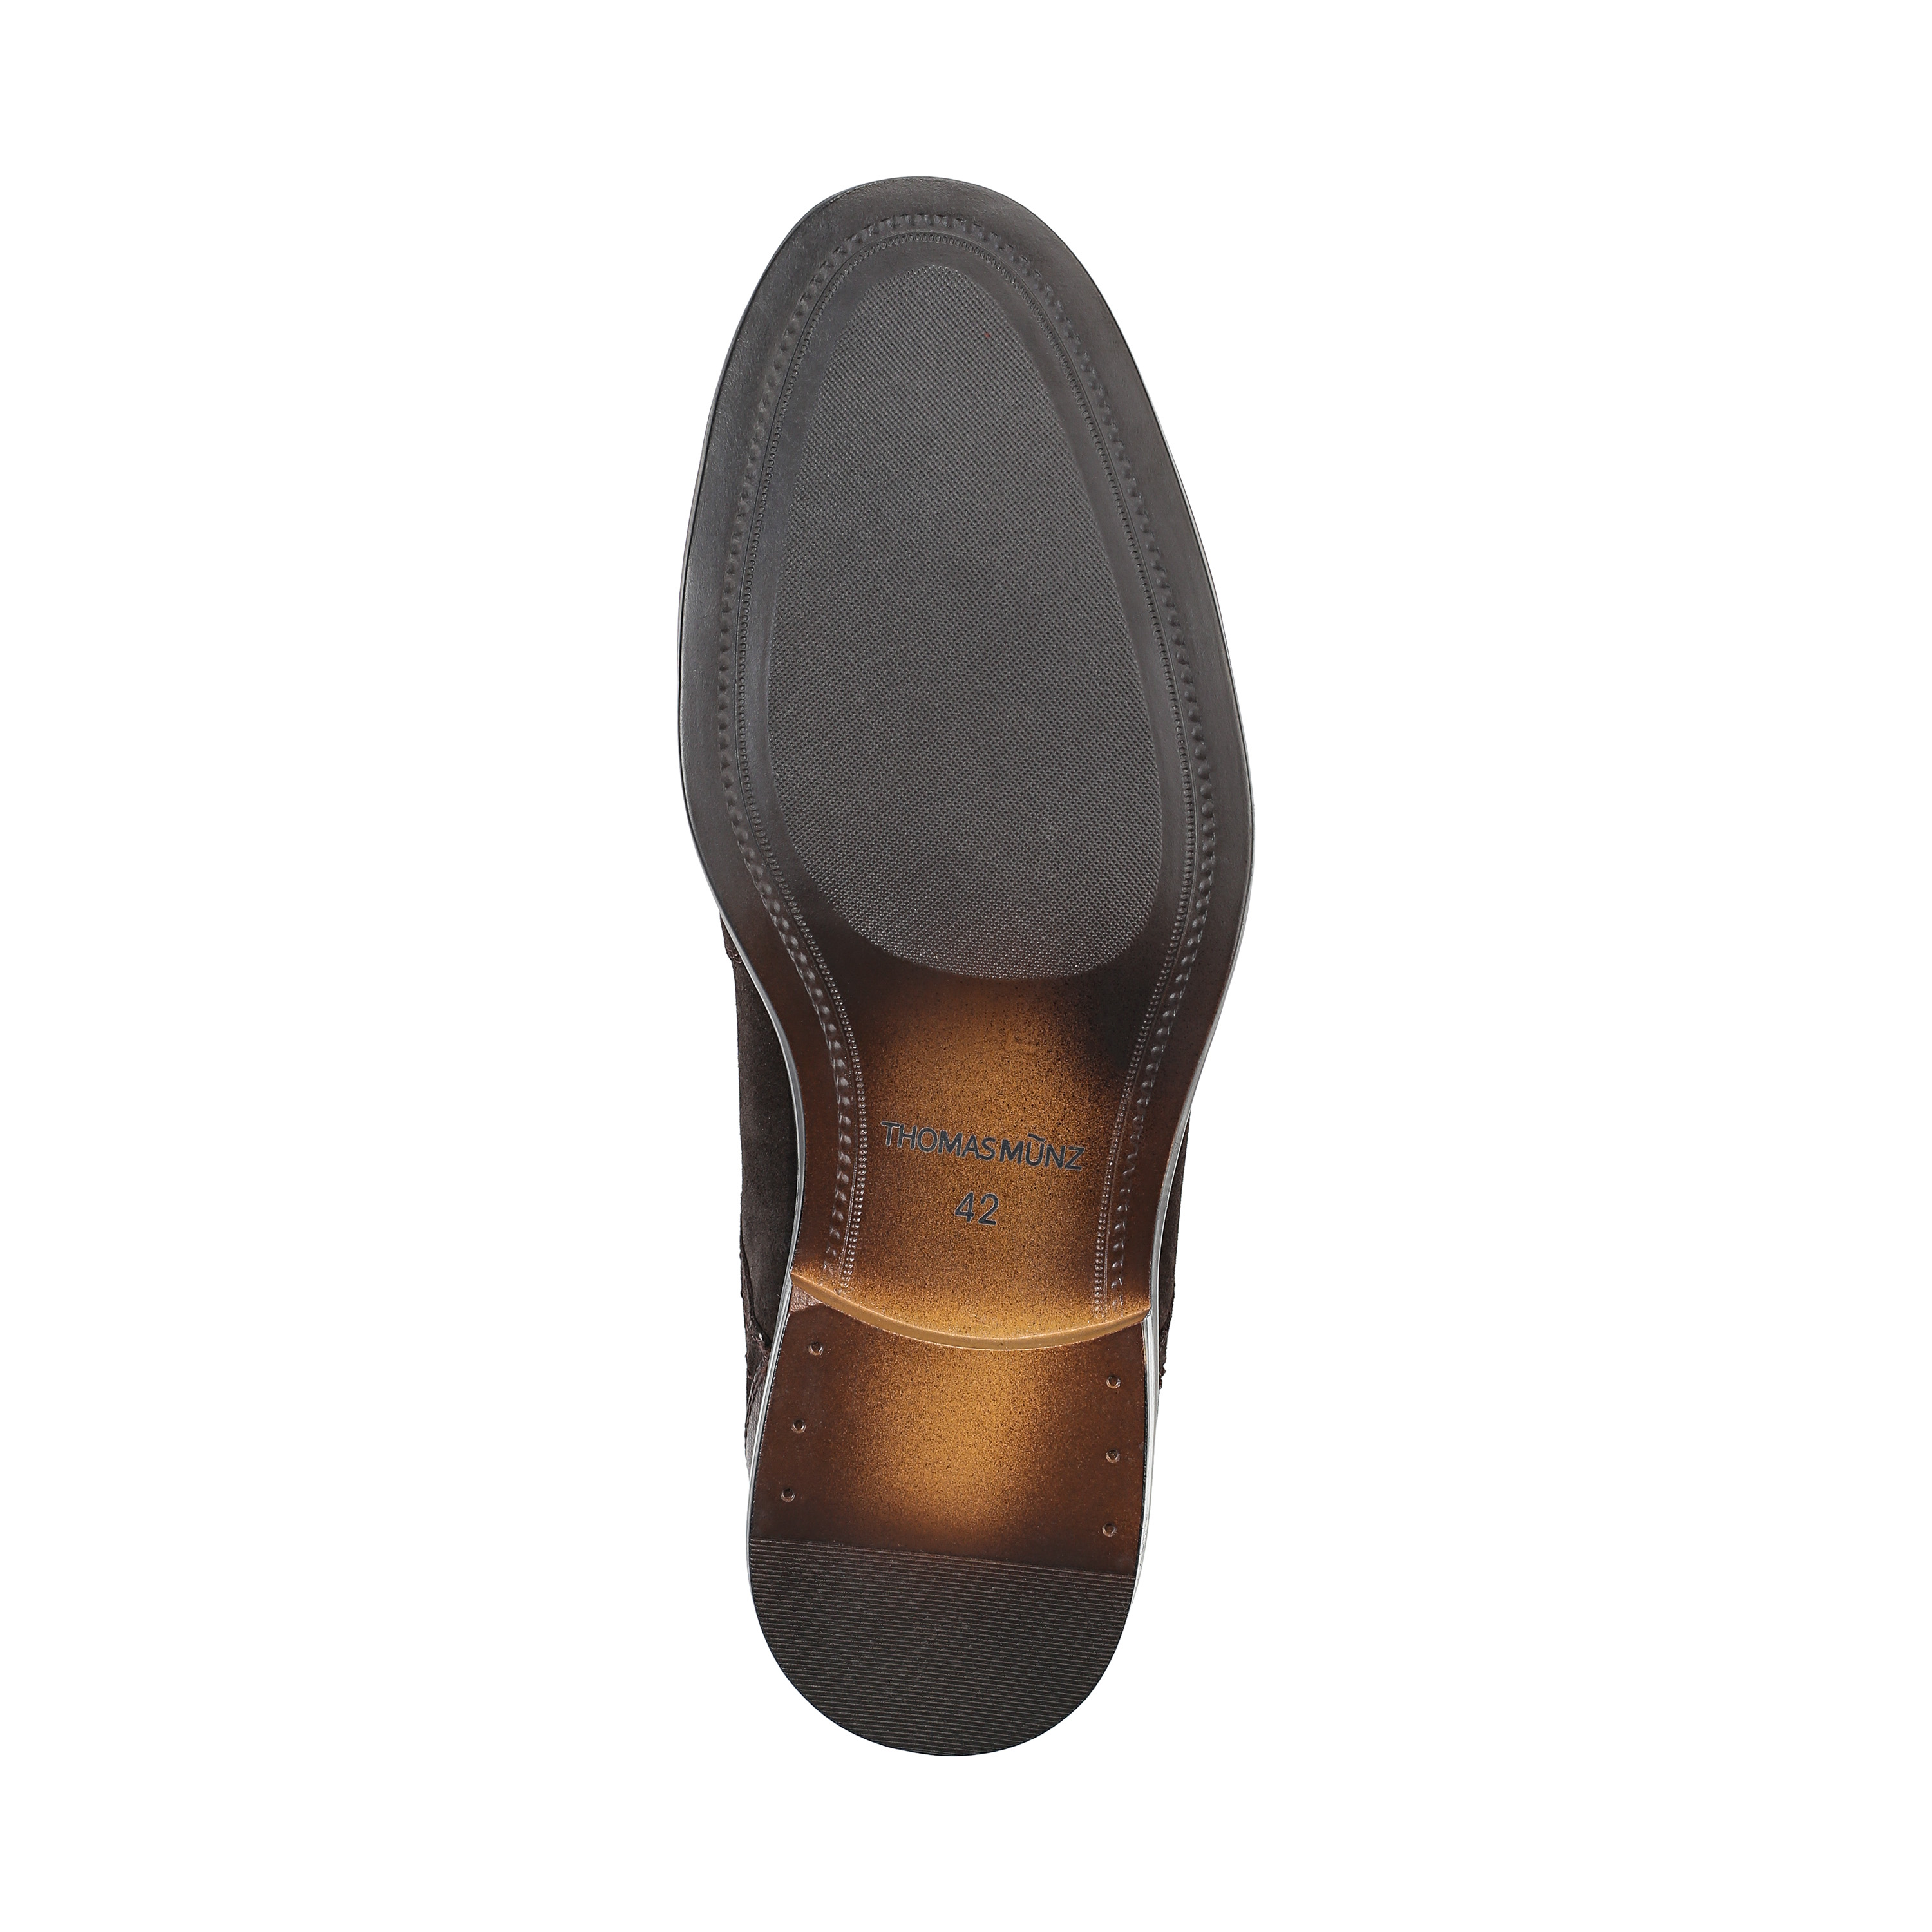 Туфли Thomas Munz 73-134C-1502, цвет коричневый, размер 40 дерби - фото 4